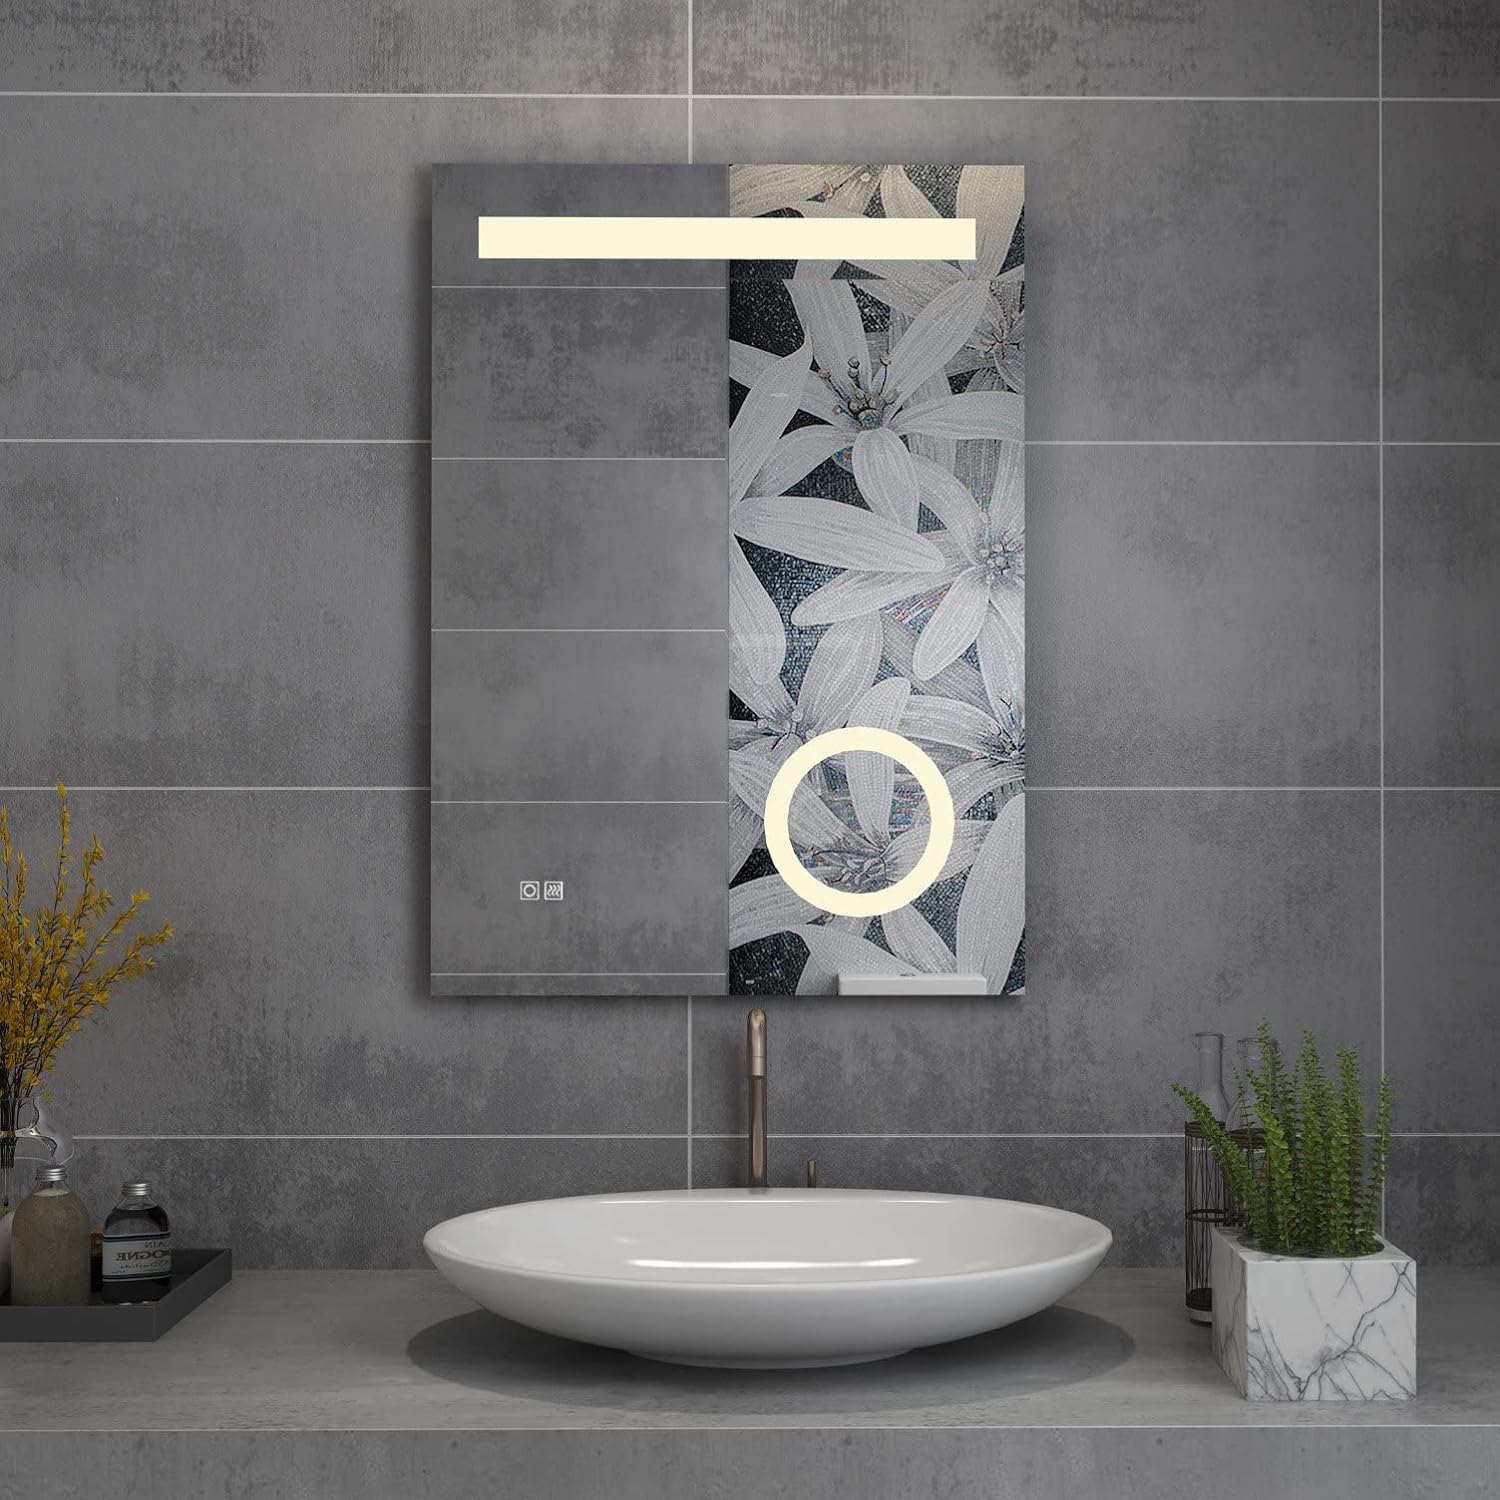 LED Badspiegel mit Beleuchtung Wandspiegel 3 Lichtfarbe Beschlagfrei Lichtspiegel Badezimmerspiegel Touch Uhr Spiegel 80x60 100x70 120x80cm MIH